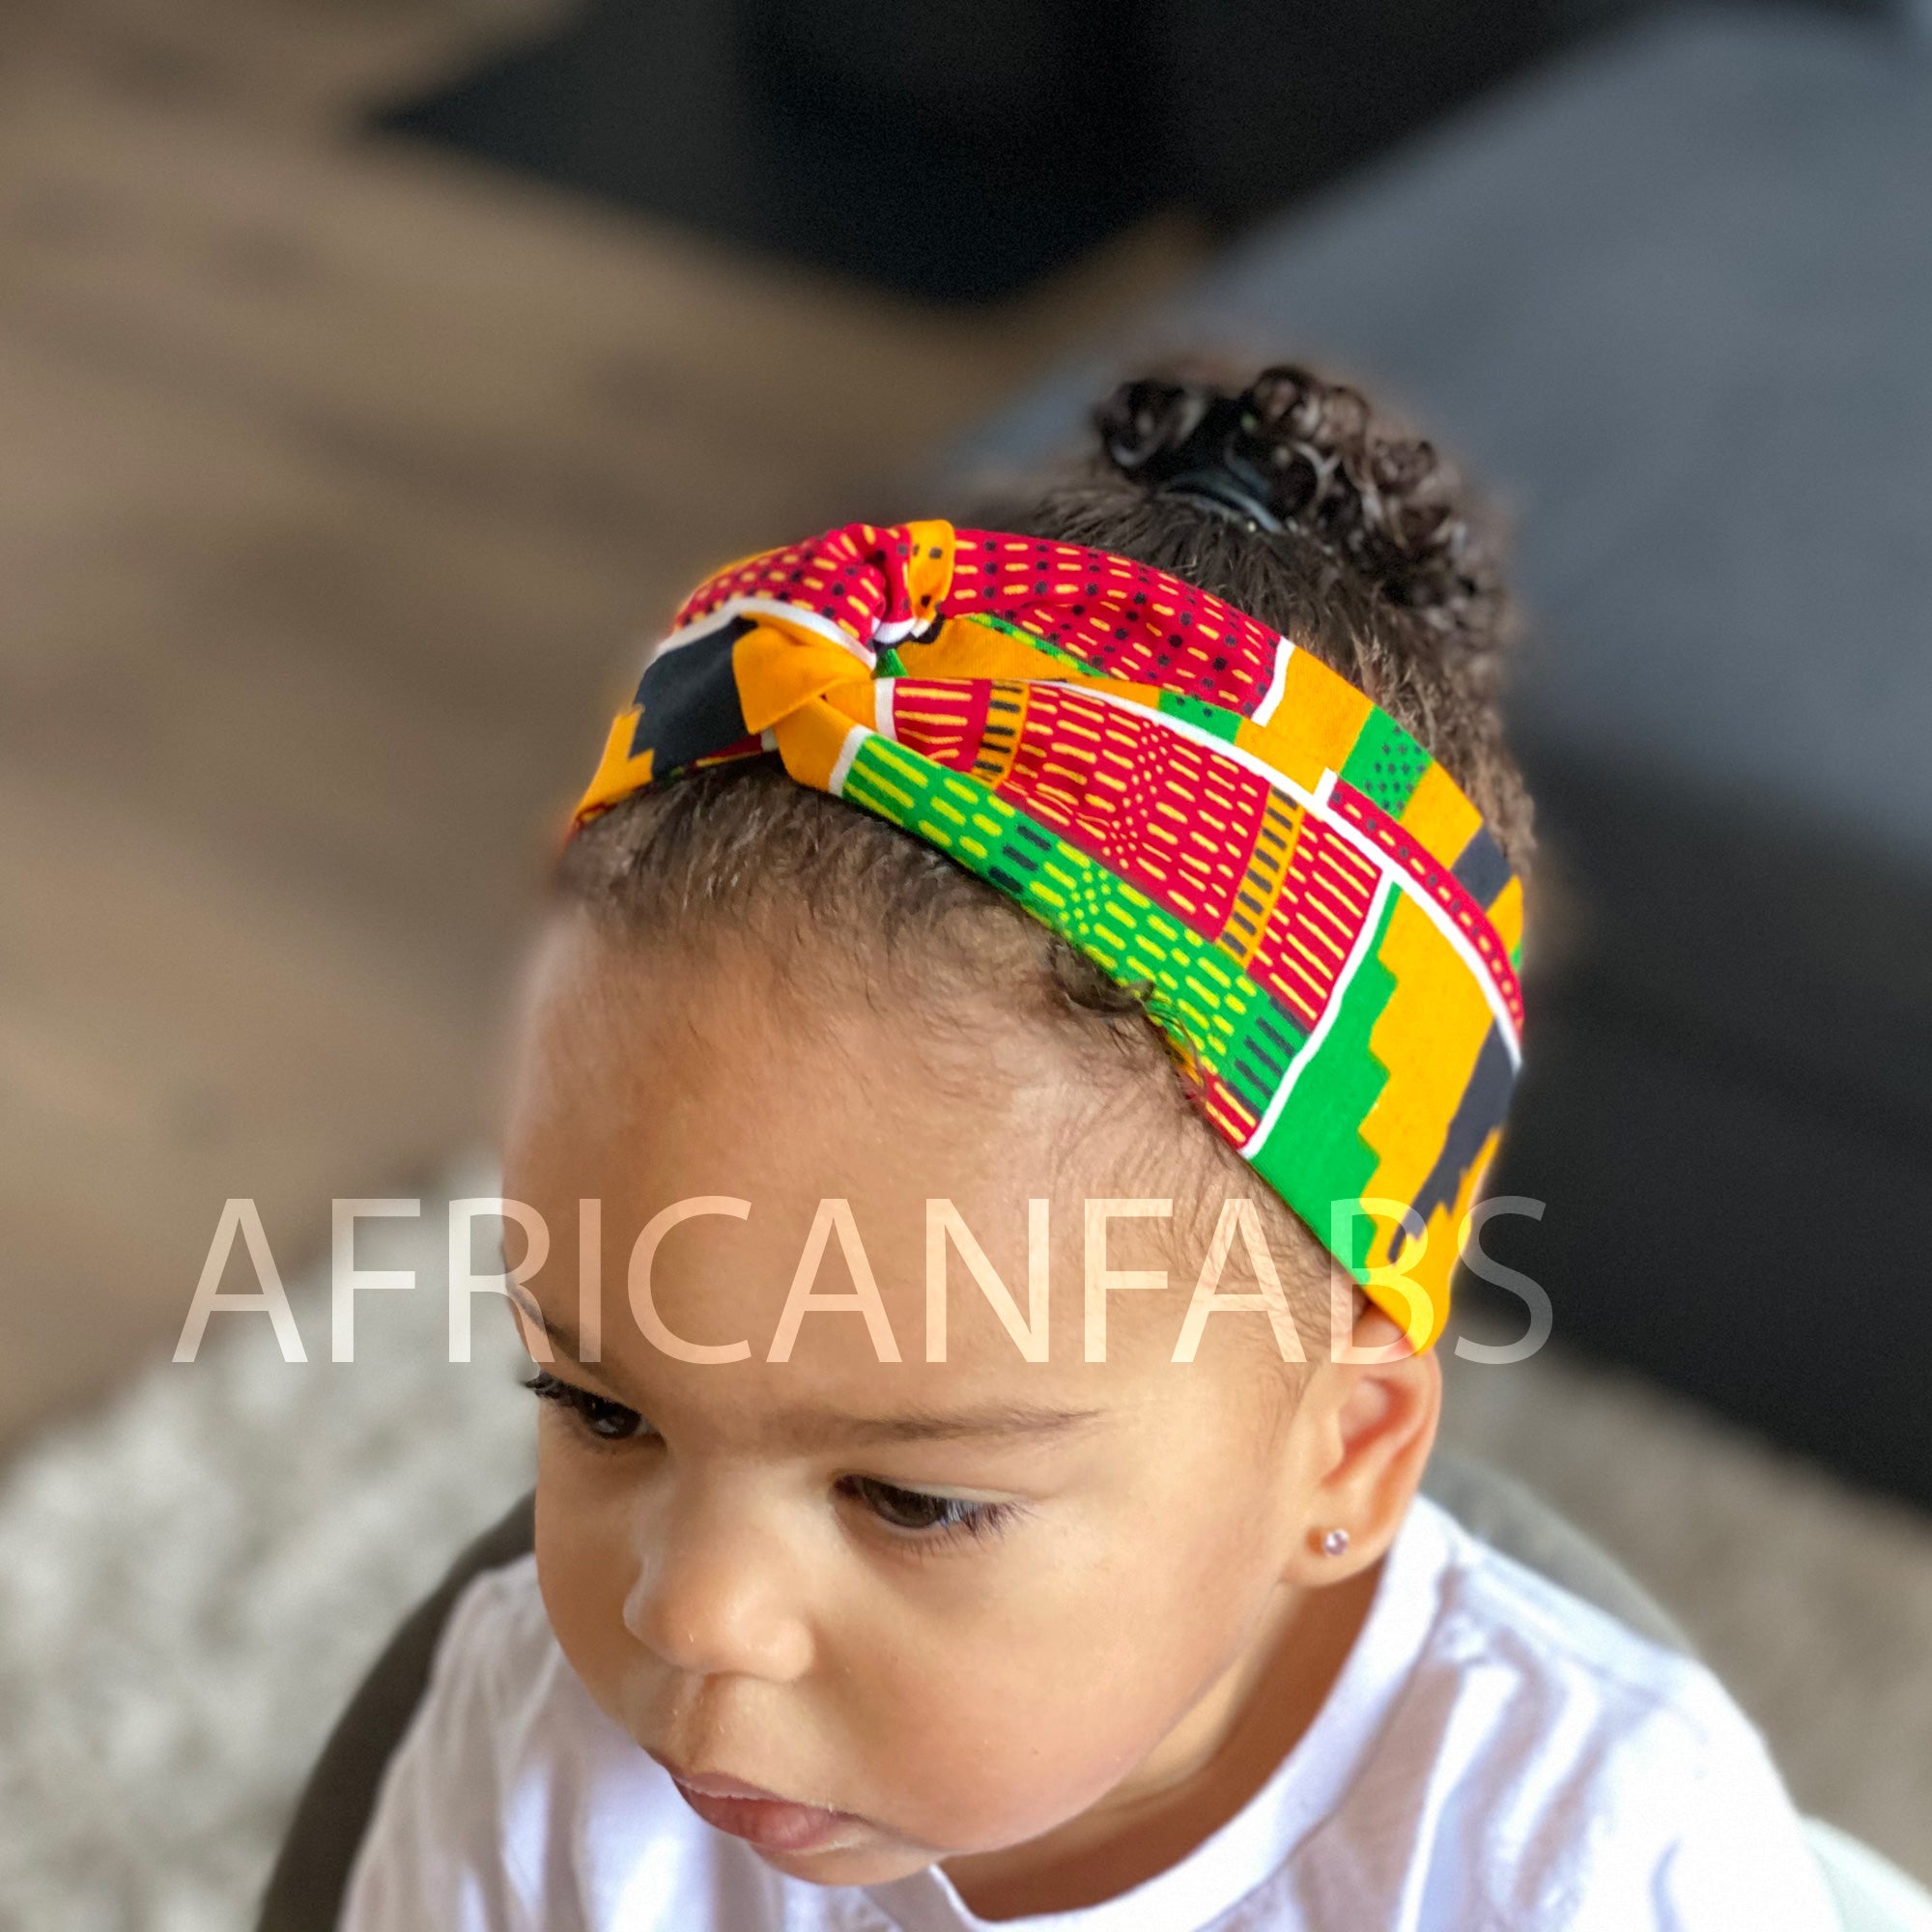 Haarband / Stirnband / Kopfband für Kinder in Afrikanischer Print - Kente